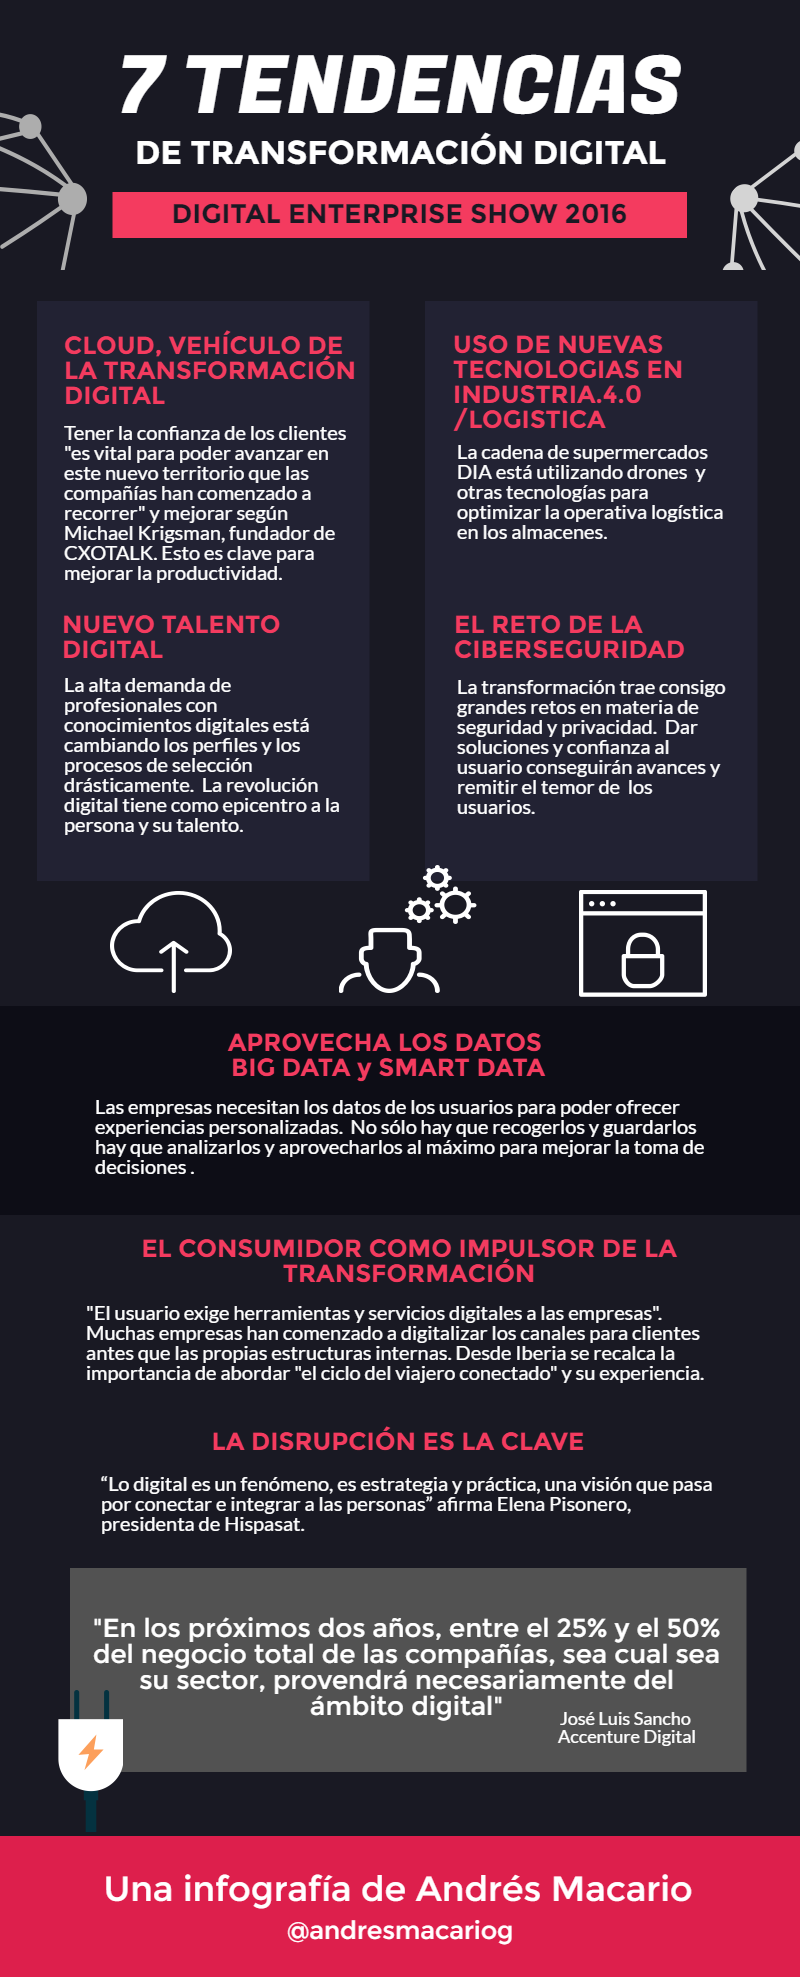 Infografia - 7 tendencias de Transformación Digital #DES2016 #Infografia Andres Macario - TICs y Formación